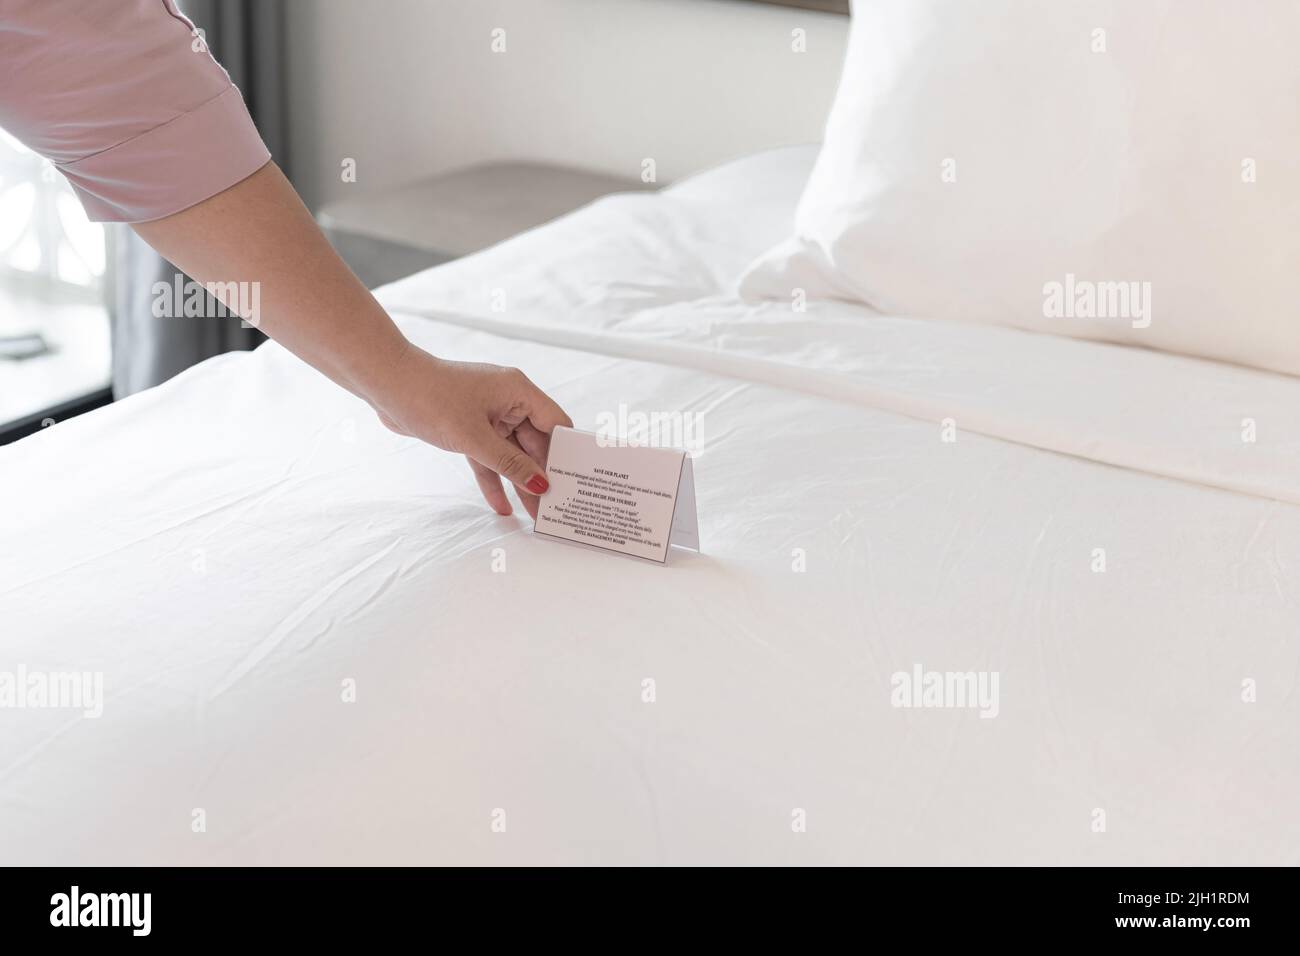 La mujer tiene las manos poniendo un cartel para cambiar las sábanas de la cama Foto de stock